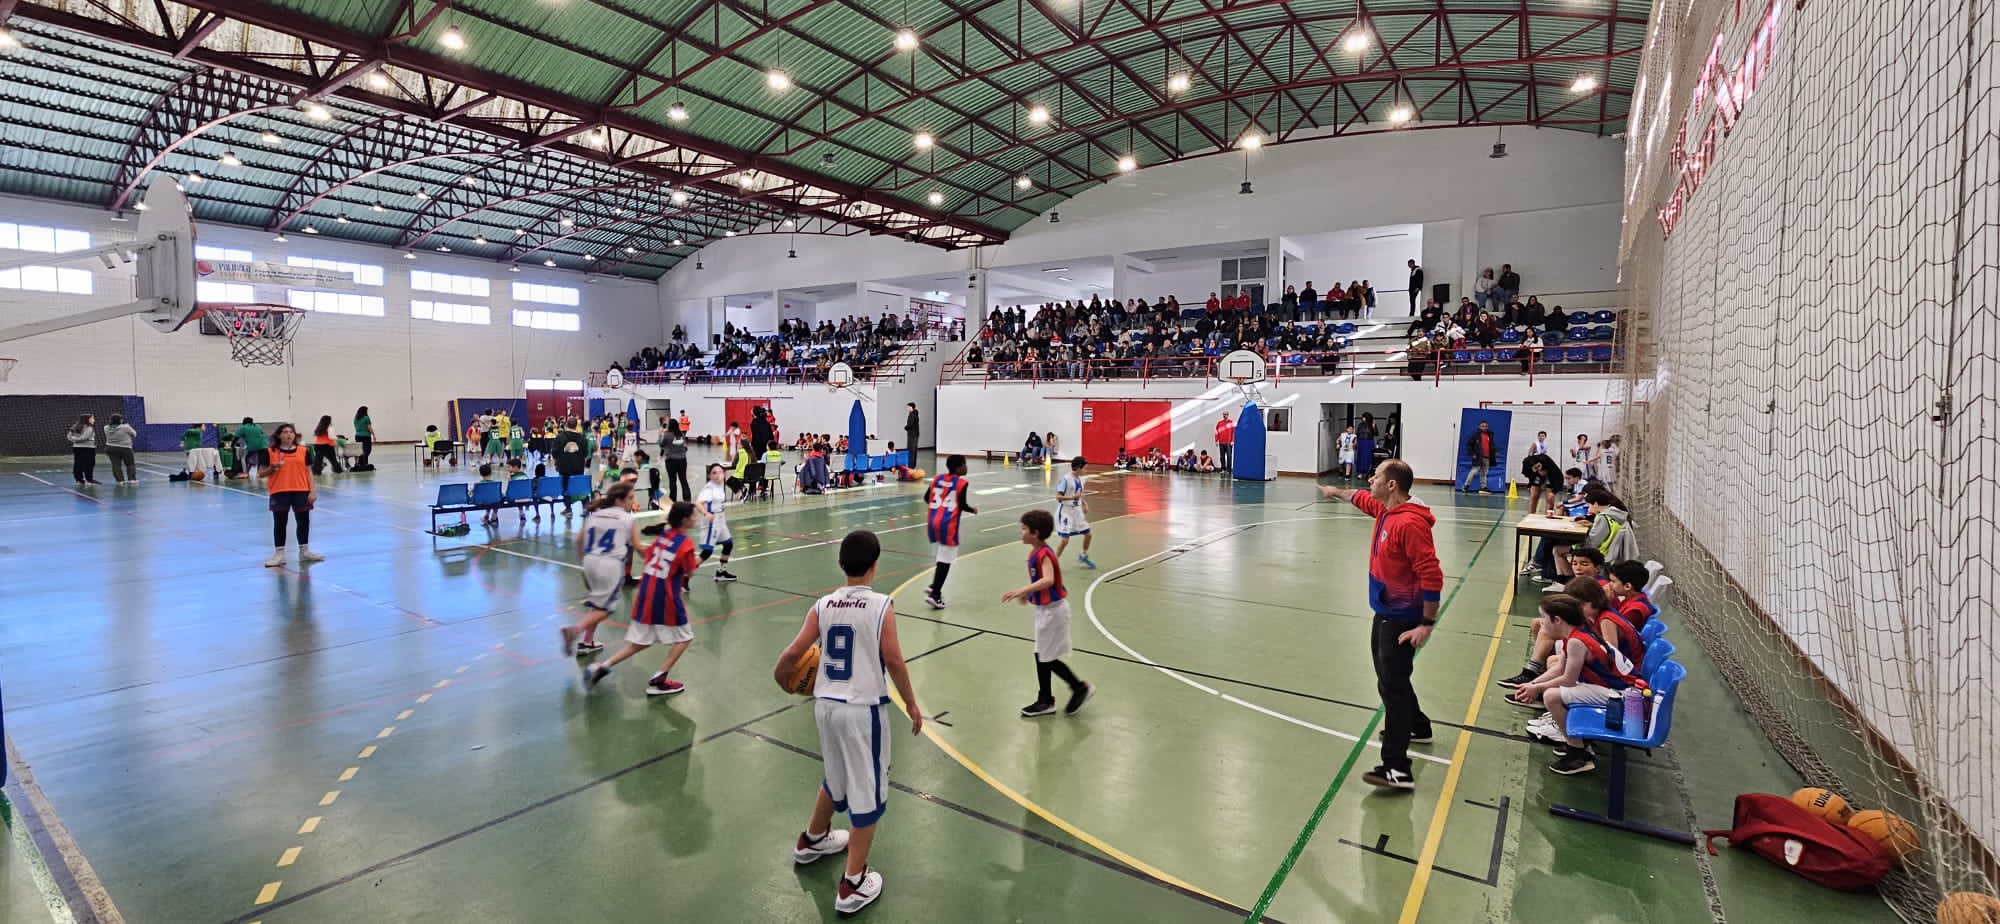 Concentração de Minibasquetebol juntou 120 atletas em Pinhal Novo